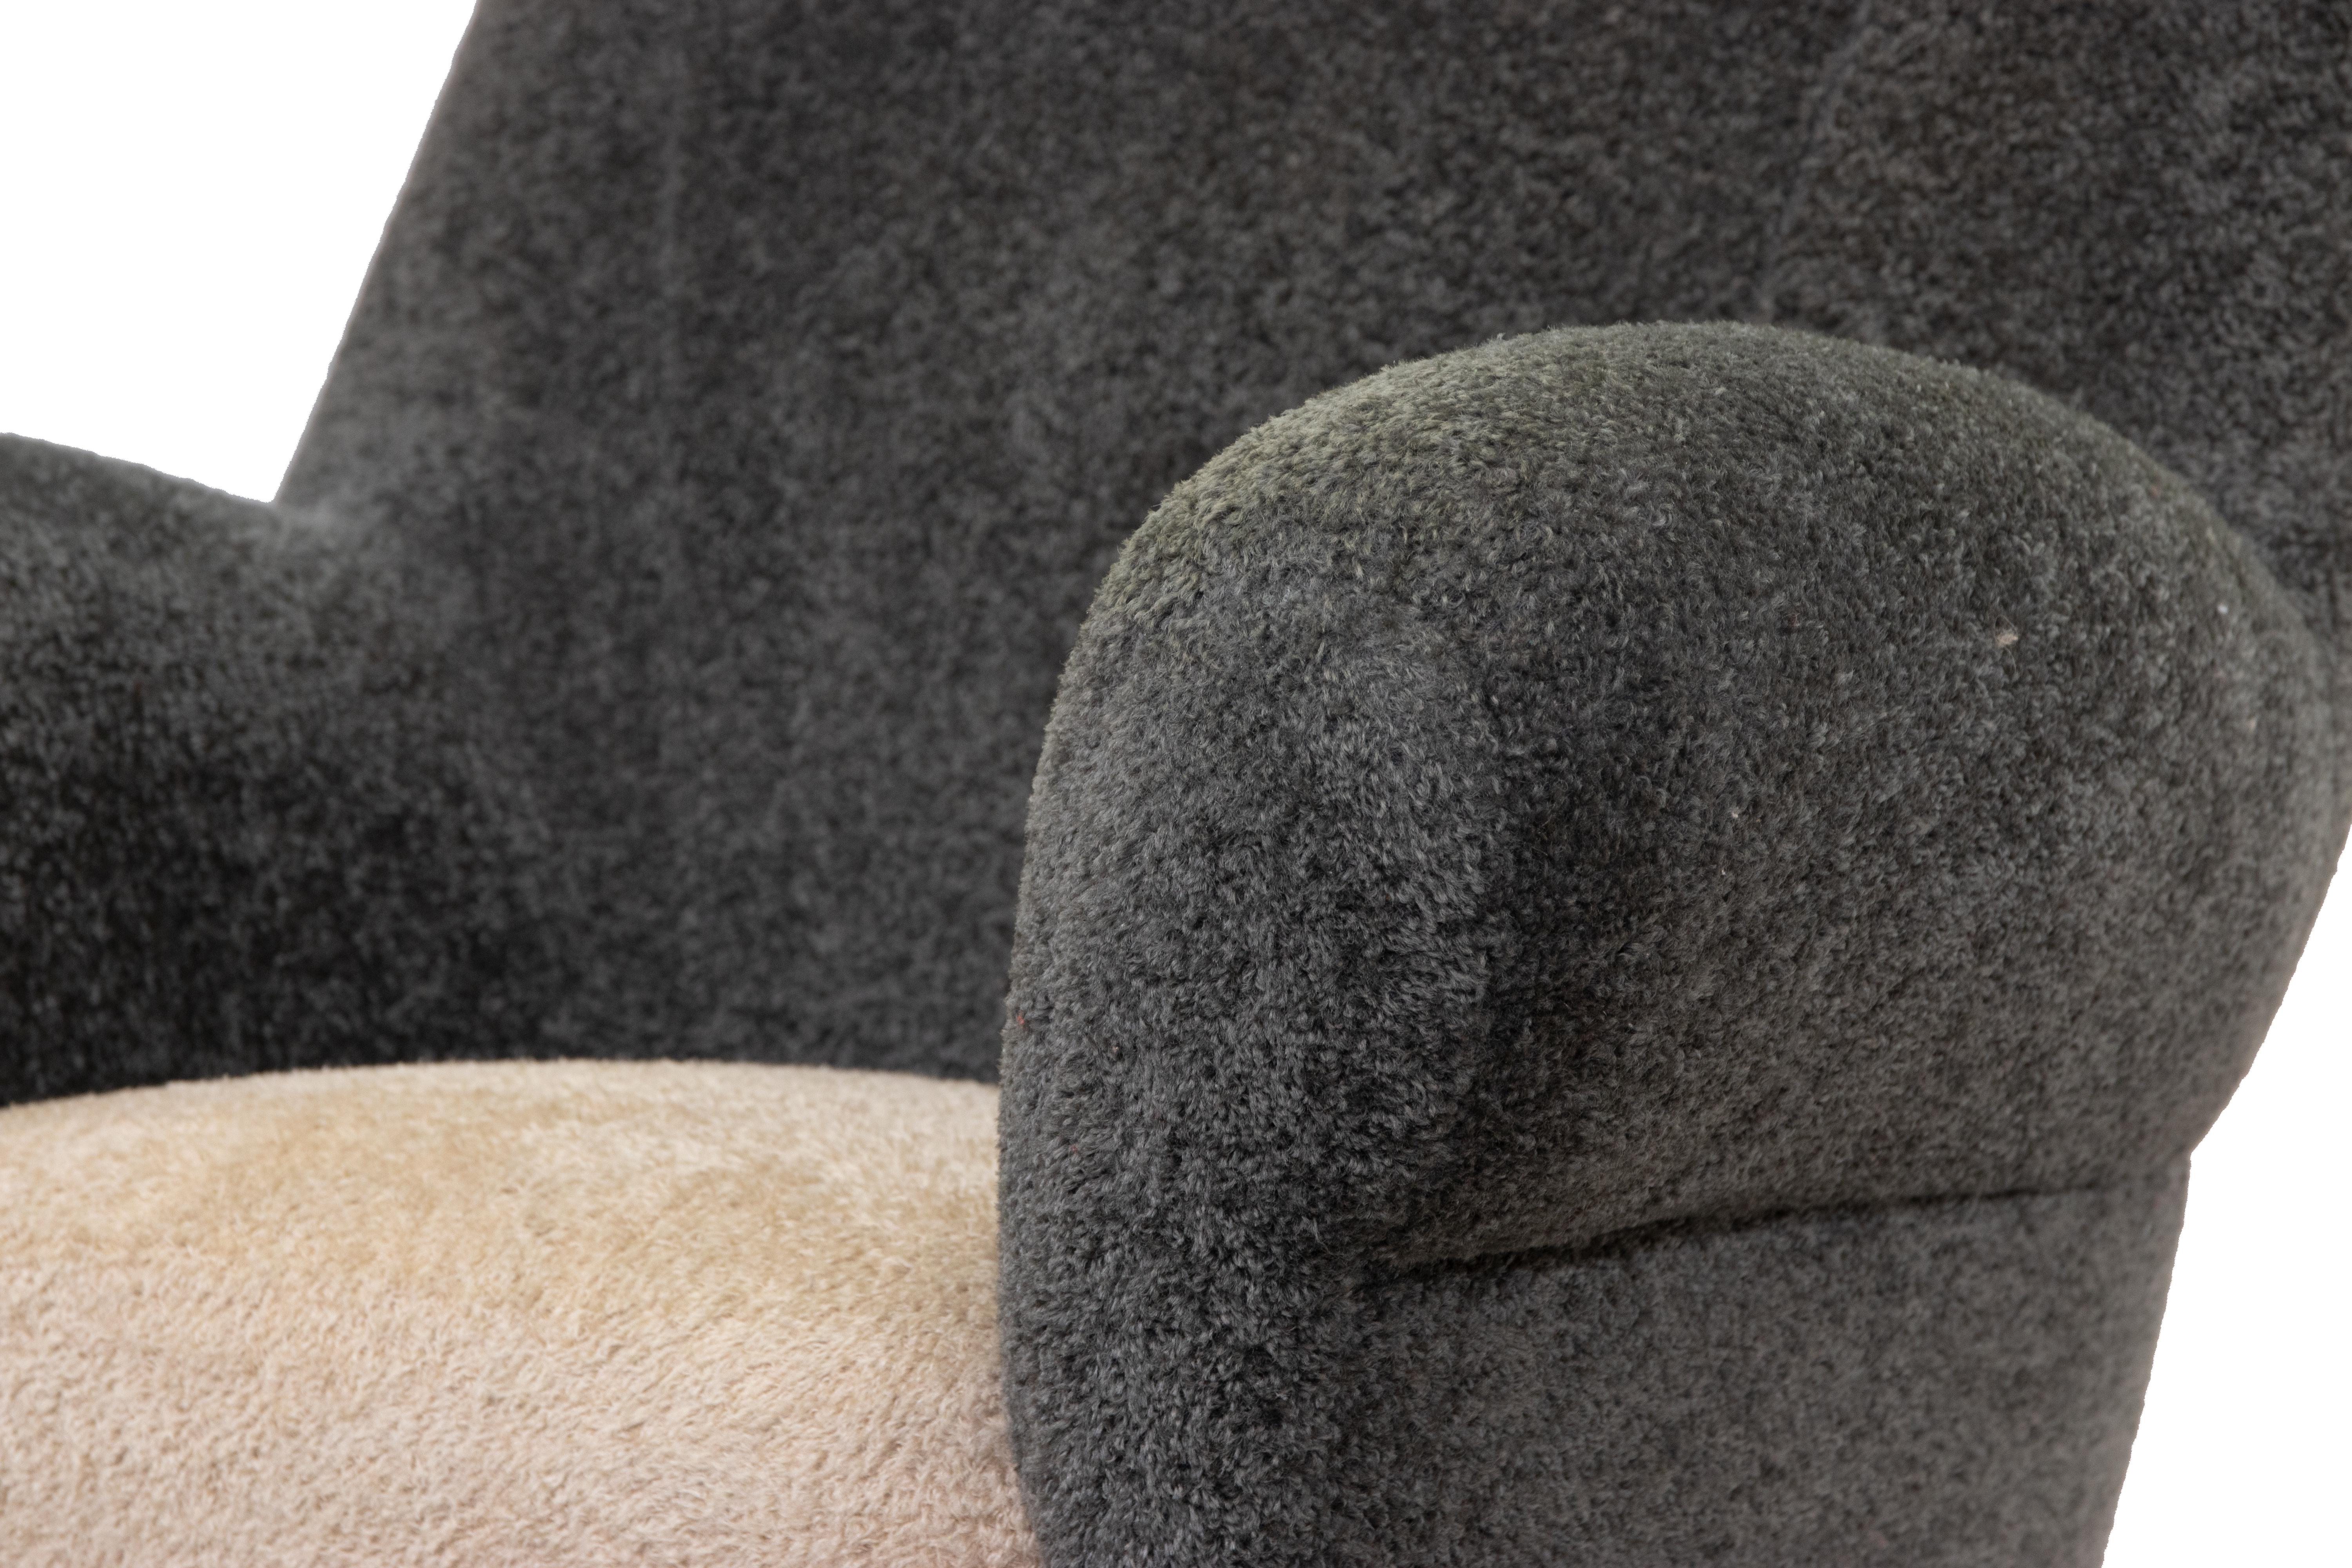 Sofa Set ist ein Designobjekt von Gigi Radice aus der Hälfte des 20.

Ein Paar Sessel und ein geschwungenes Sofa mit rotem, schwammigem Stoffbezug und vermessingten Füßen. 

Gigi Radice ist bekannt für seine ikonischen kommaförmigen Sofas, wahre